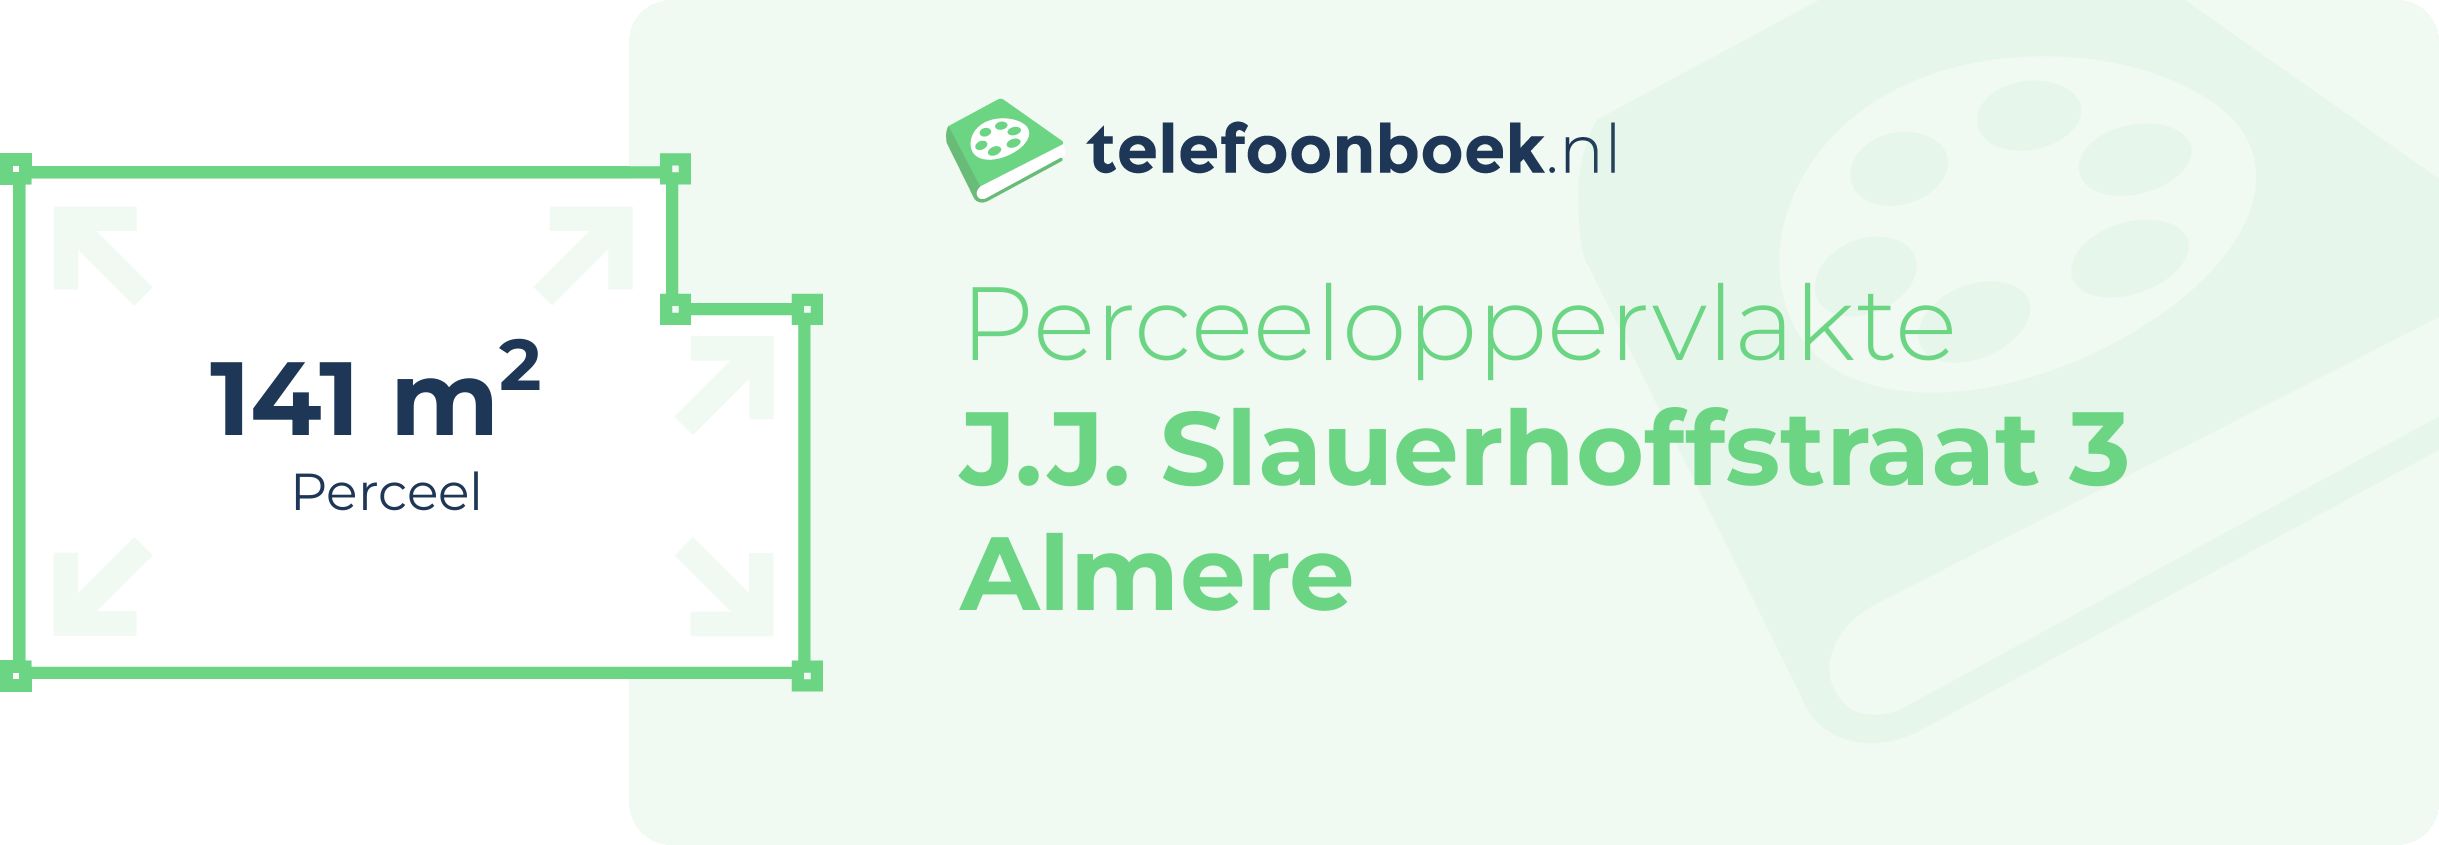 Perceeloppervlakte J.J. Slauerhoffstraat 3 Almere